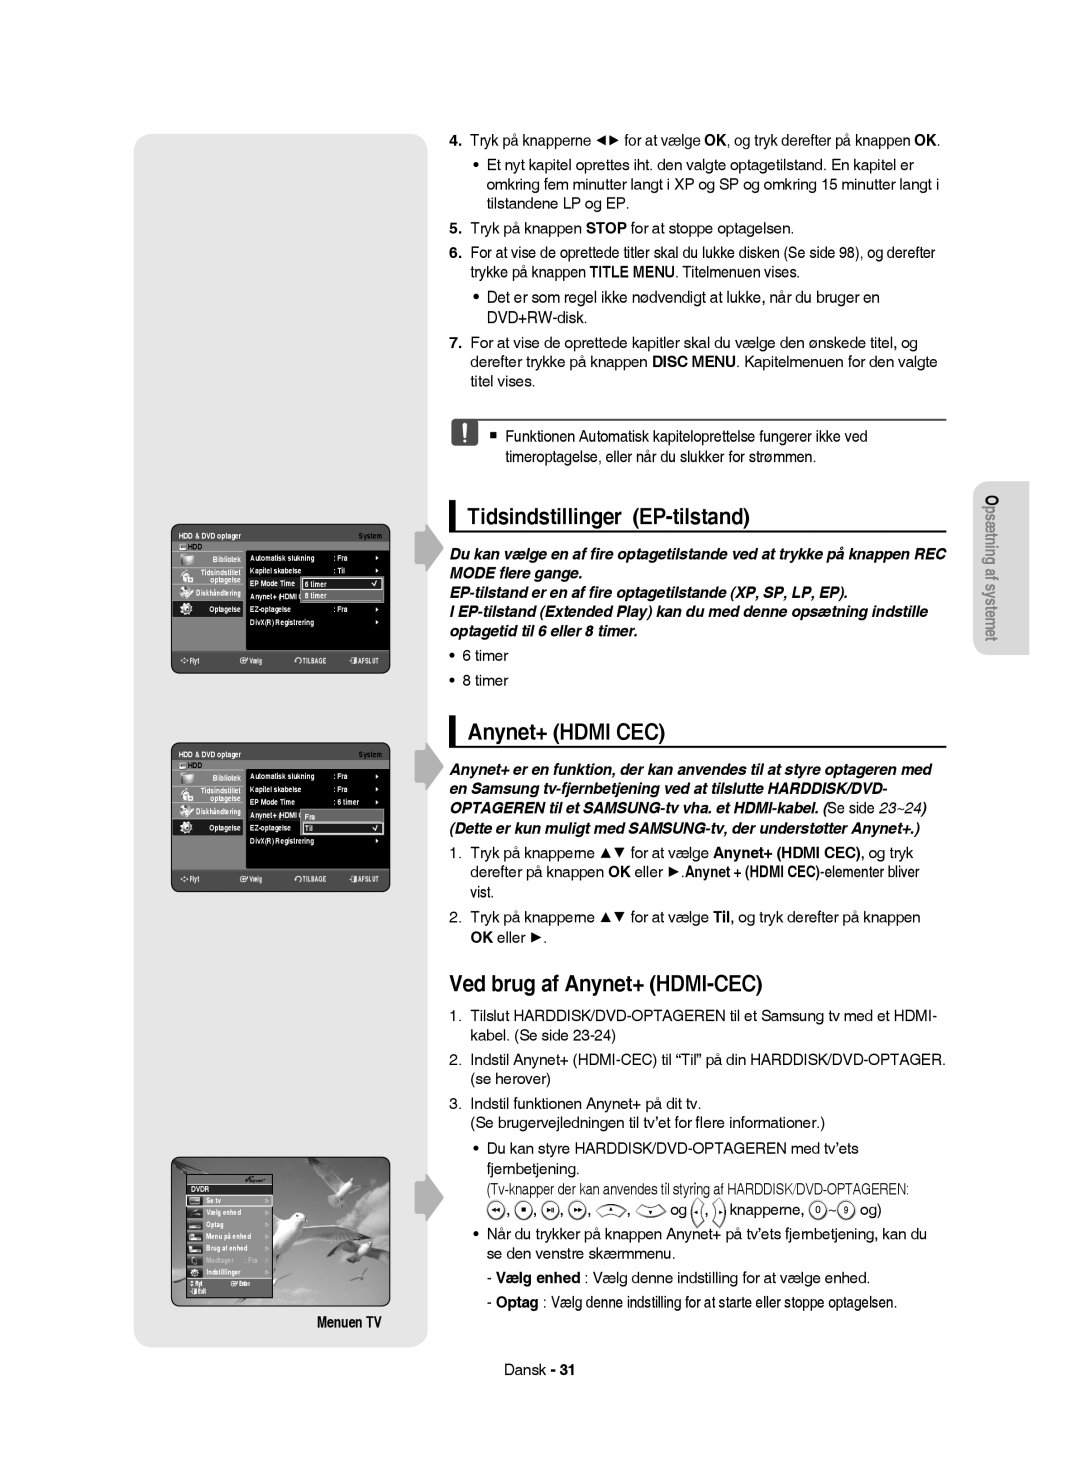 Samsung DVD-HR753/XEE manual Tidsindstillinger EP-tilstand, Anynet+ Hdmi CEC, Ved brug af Anynet+ HDMI-CEC, Menuen TV 